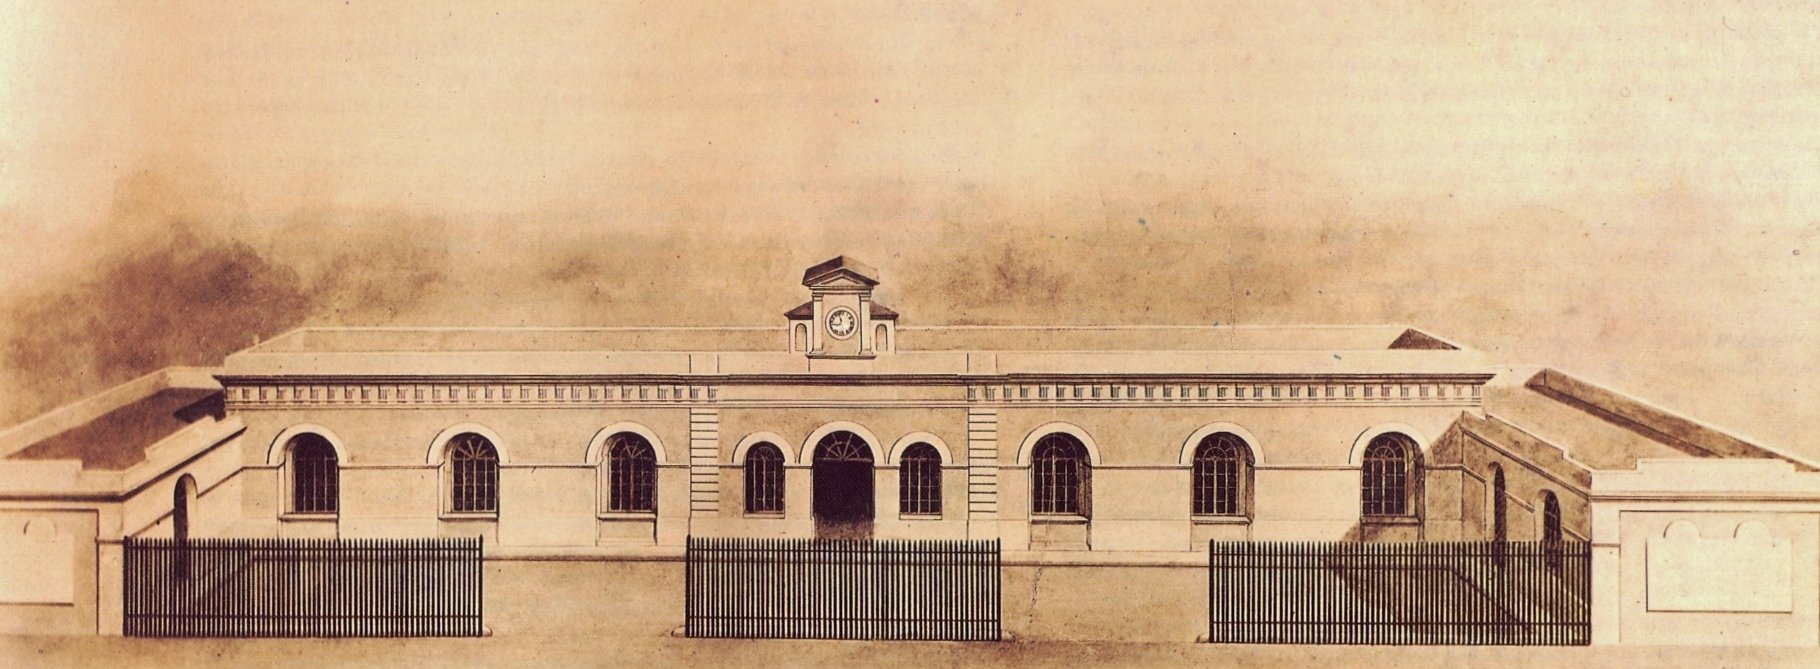 Grabat primera estació Barcelona Mataro 1848